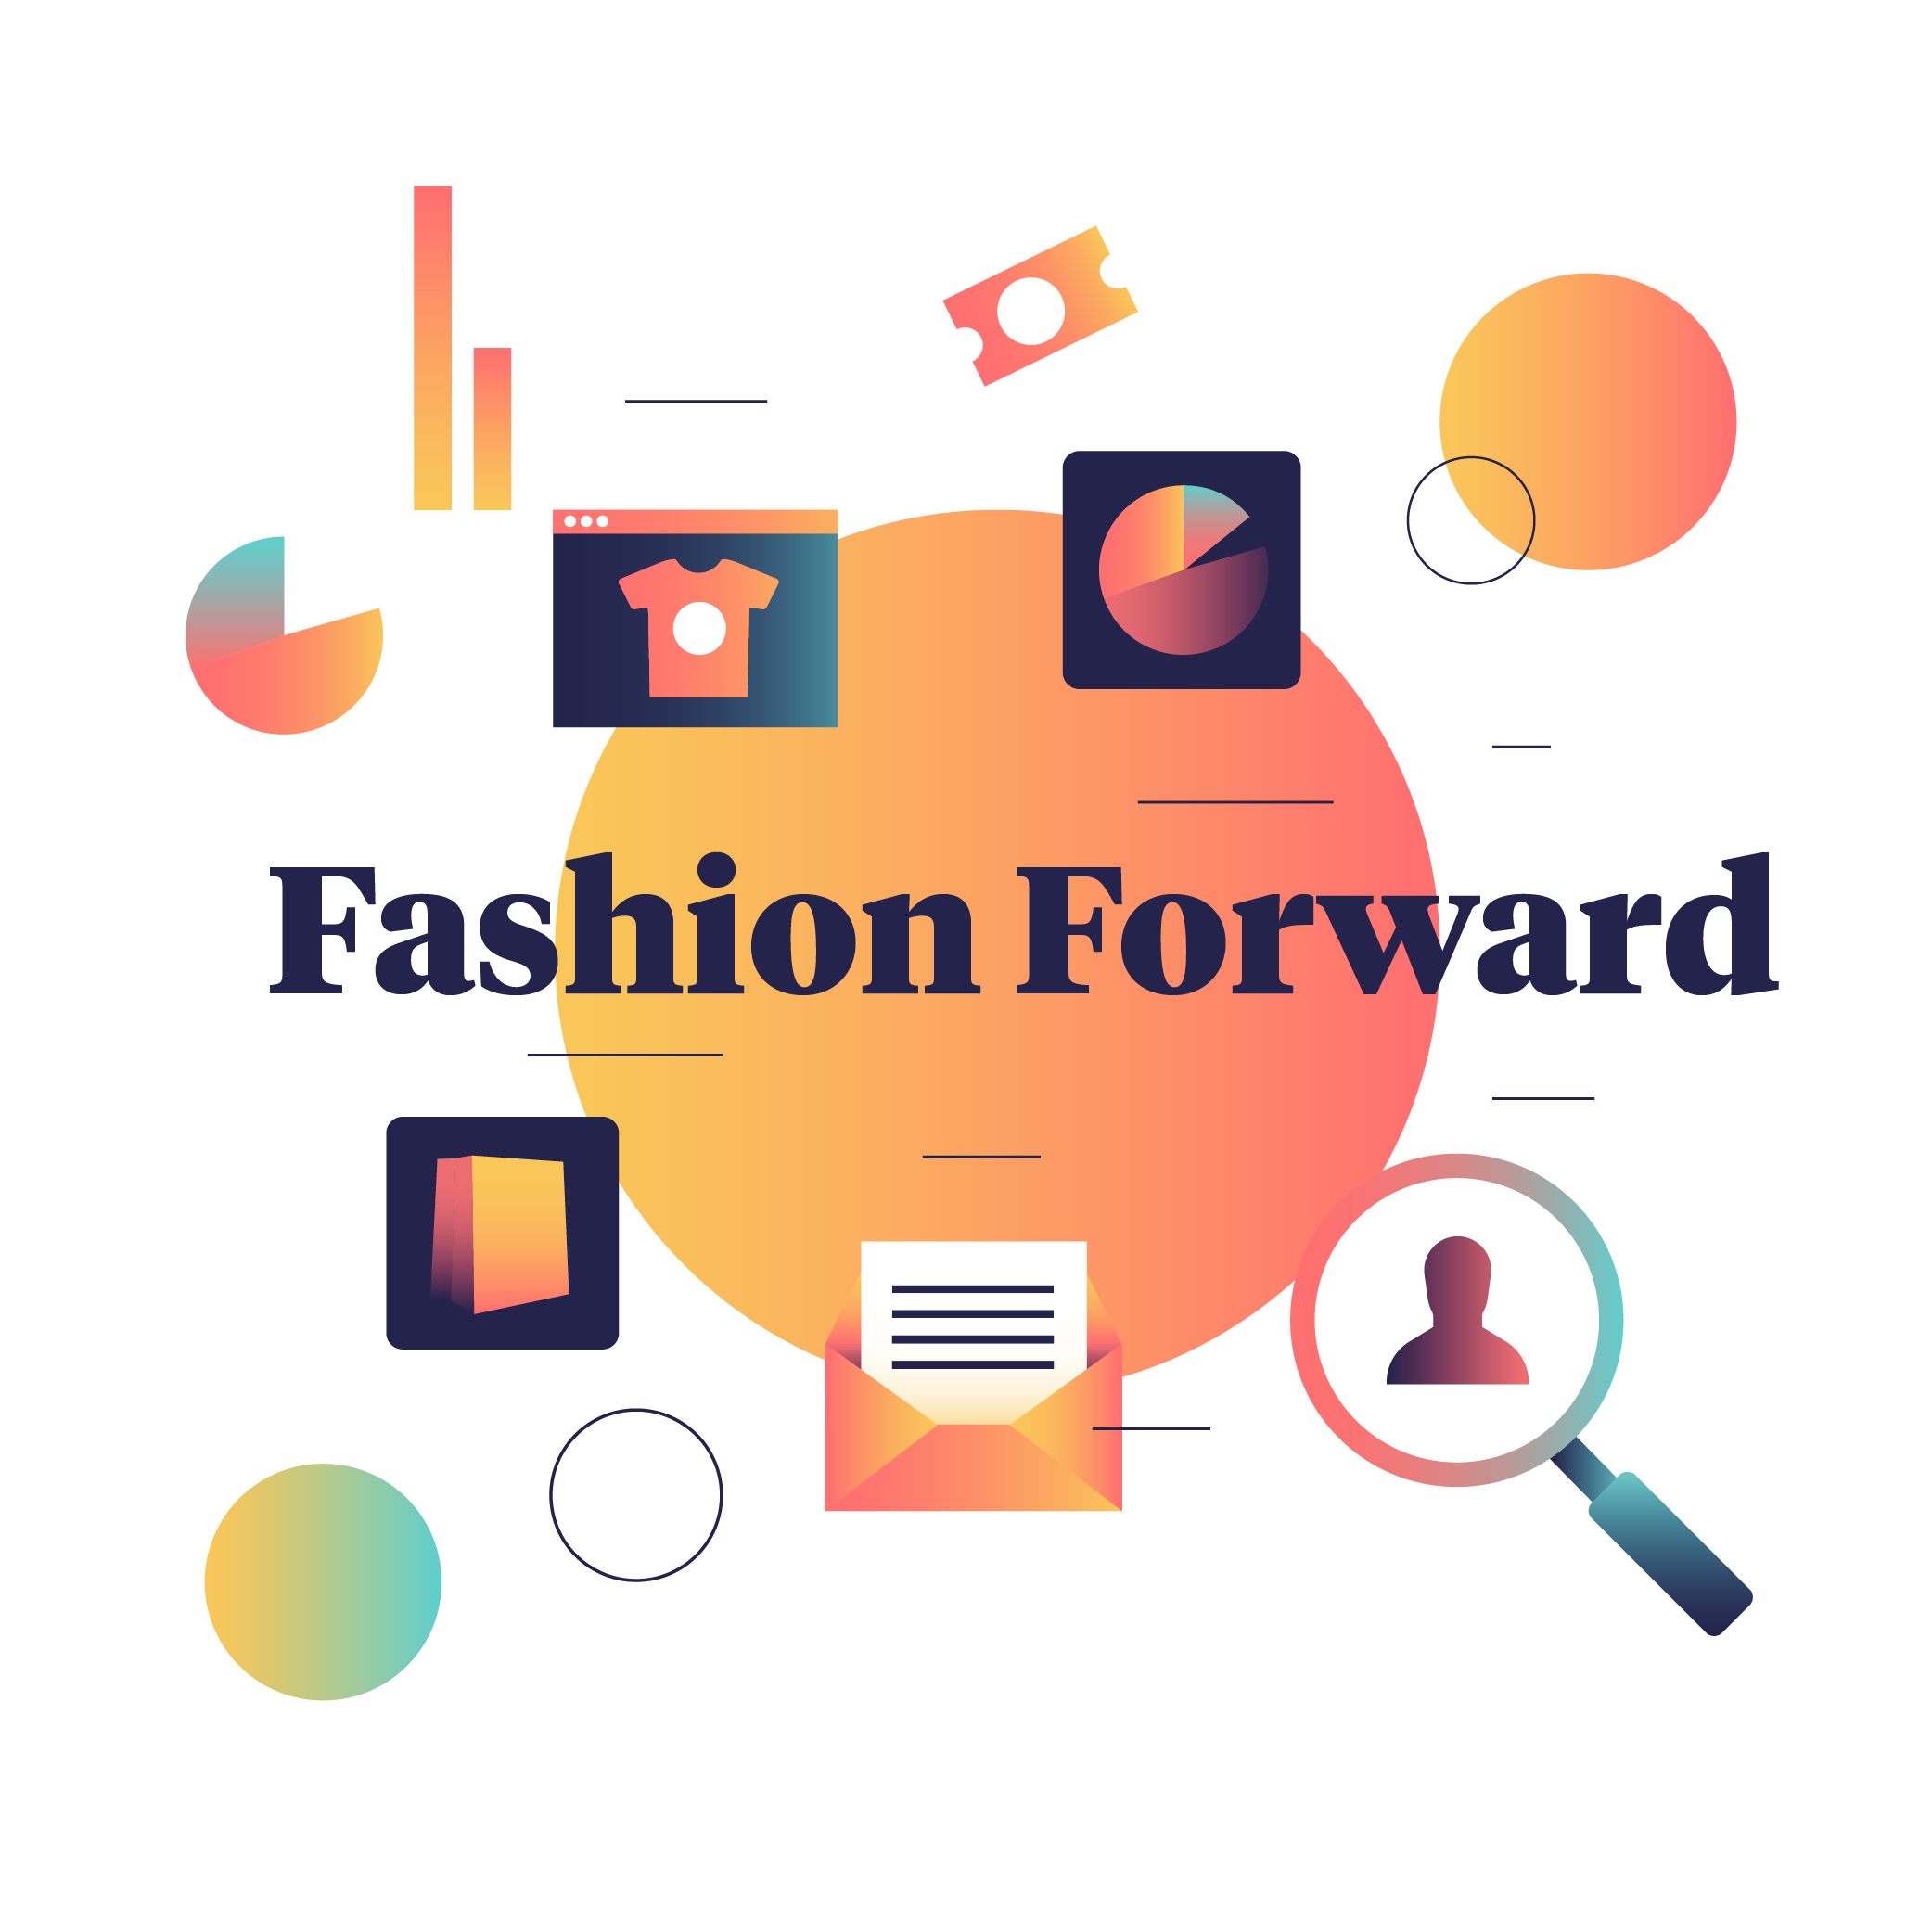 Fashion Forward Report